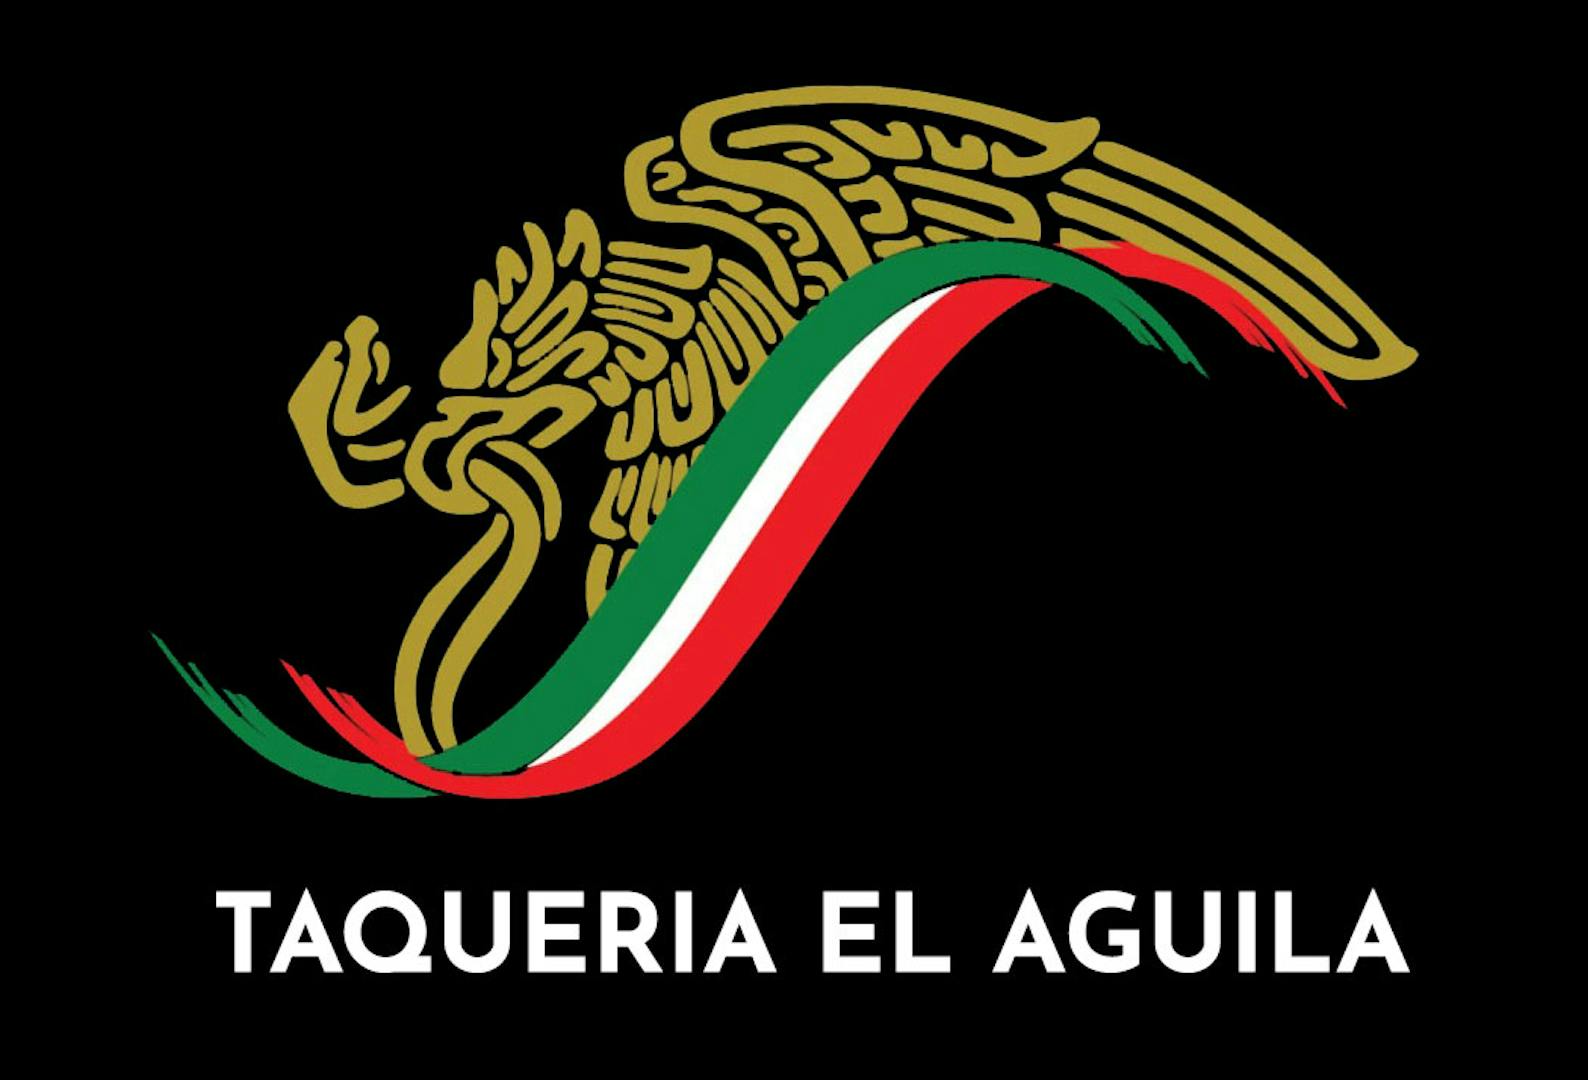 Taqueria El Aguila